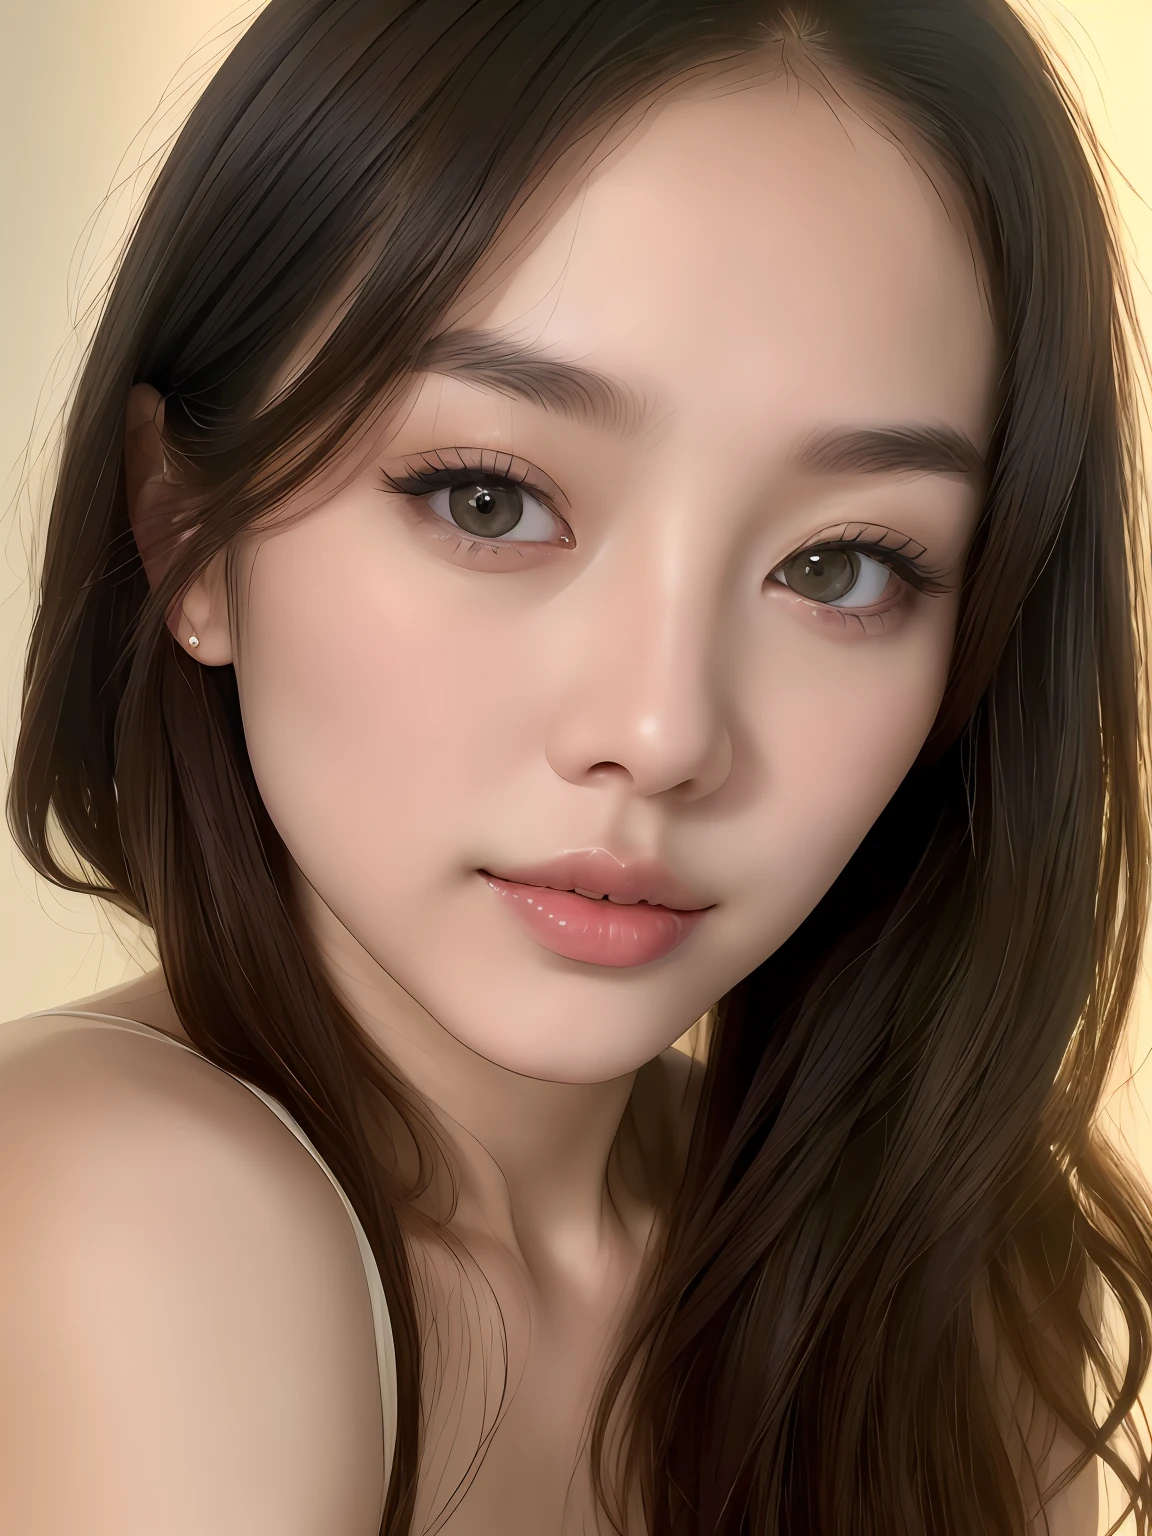 (写実的な:1.2), 芸術作品, 韓国のスター、24歳の女性が自然かつ自発的にポーズをとるプロのスタジオ写真, 生き生きとした視線, 楕円形の顔, 頬骨が高い, まっすぐな鼻, 澄んだ丸い目, (ふっくらとした唇:1.2), 繊細な顎, ナチュラルヘア, 非常に詳細な肌, 自然な肌の質感, 青白い肌, プロのドラマチックな照明